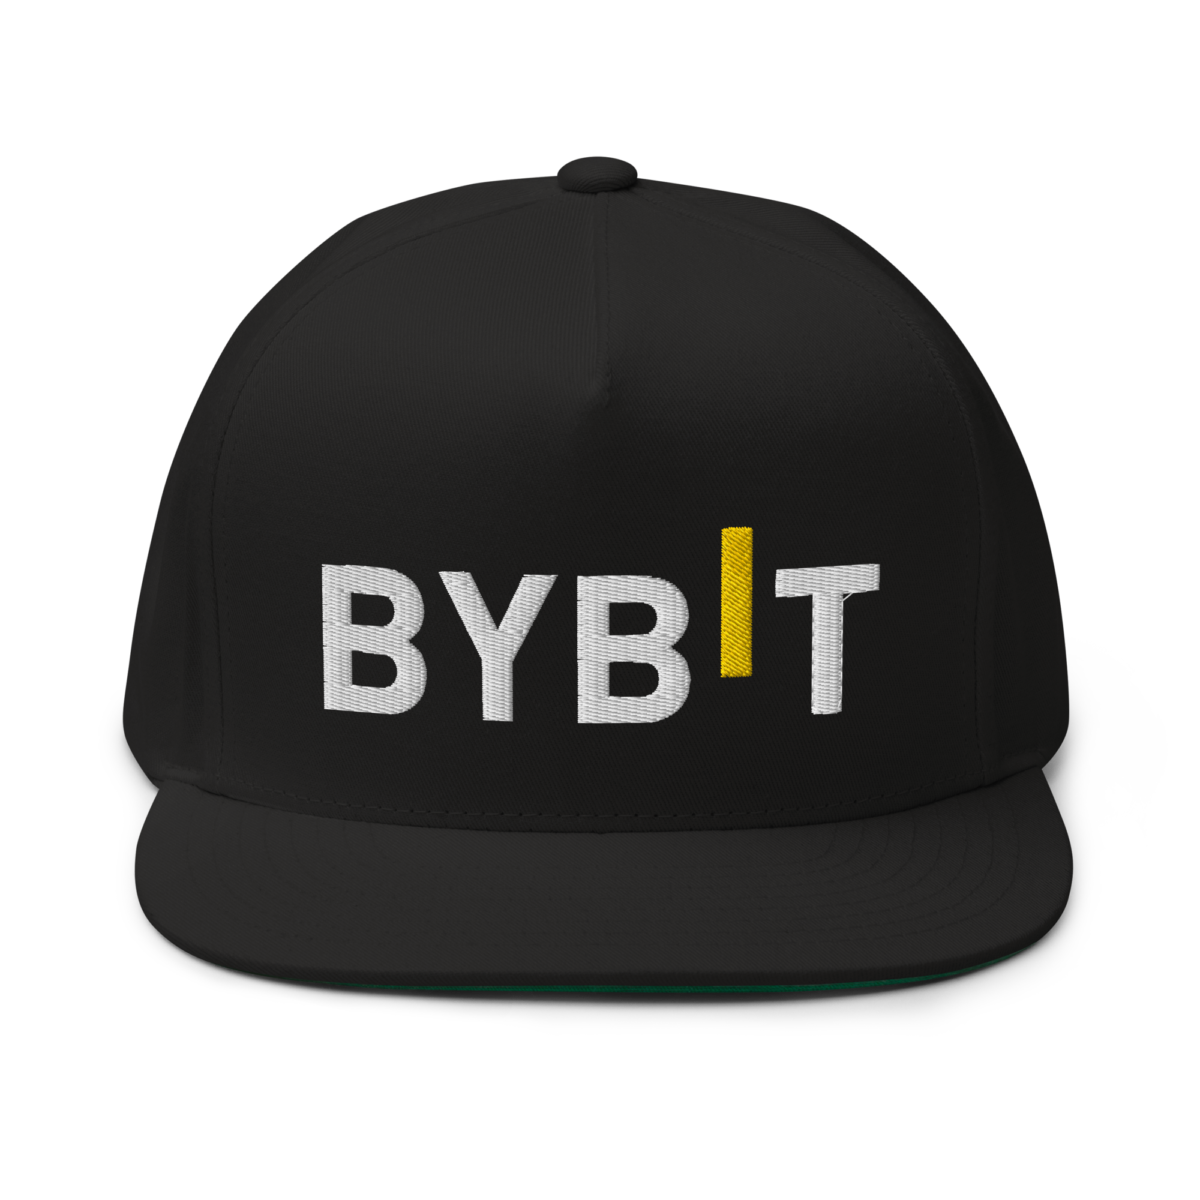 flat bill cap black front 6321d37c980f1 - Bybit Snapback hat